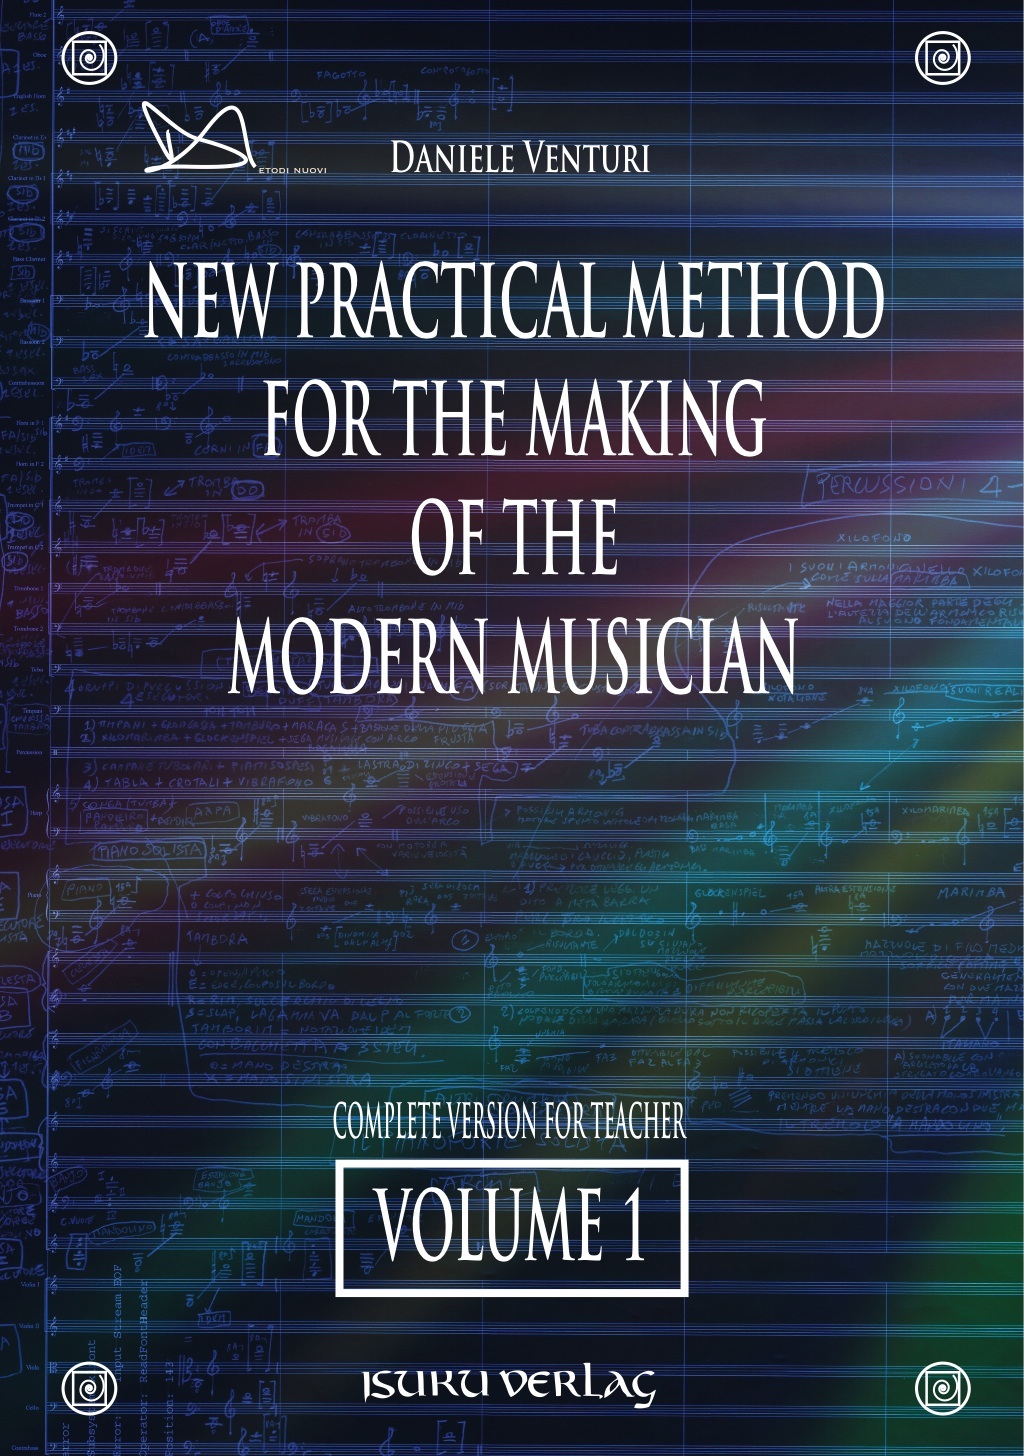 Nuovo metodo pratico per la formazione del musicista moderno